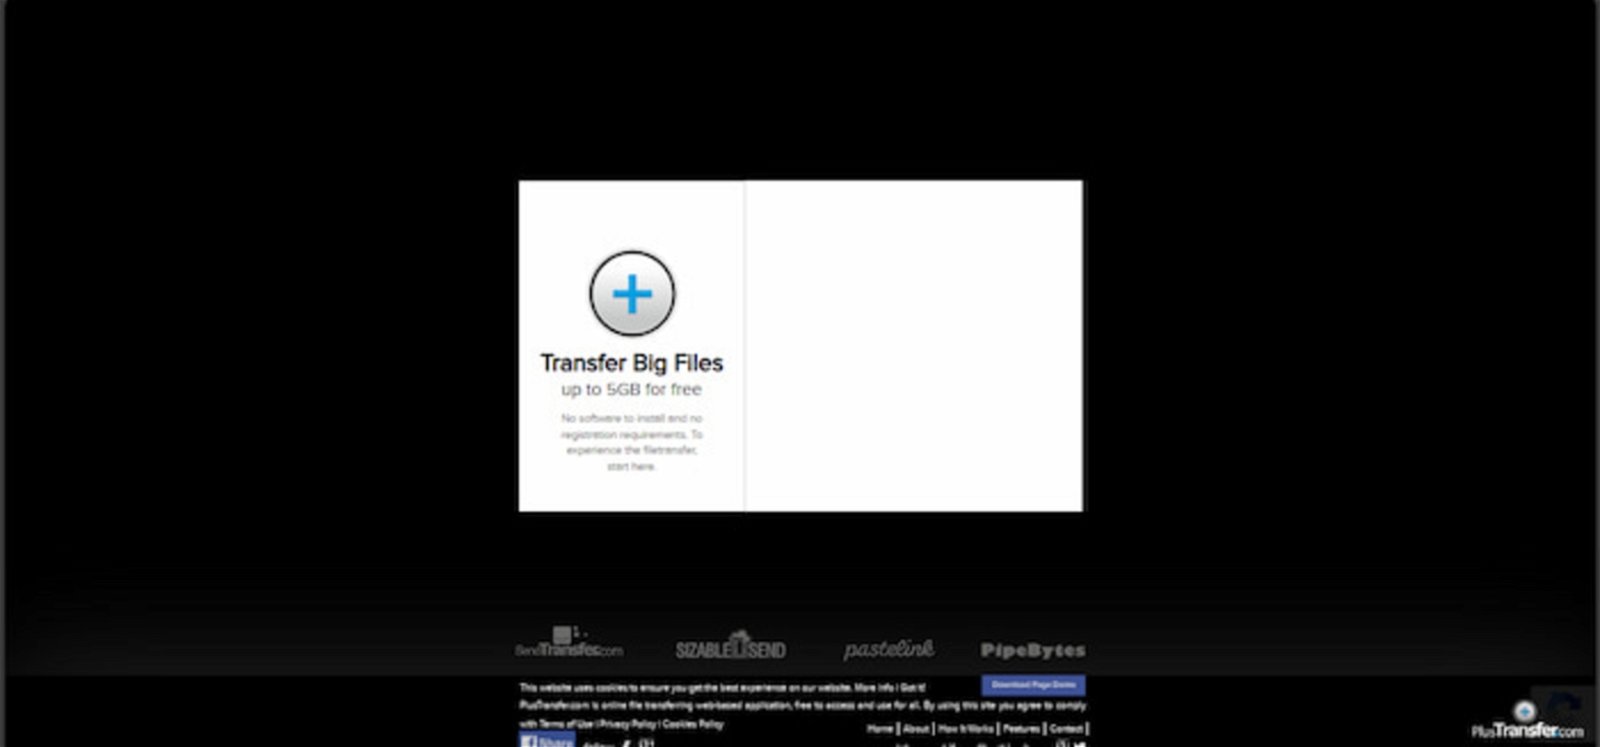 Plus Transfer es una plataforma muy sencilla de utilizar y que no requiere registro para enviar archivos de hasta 5 GB de peso